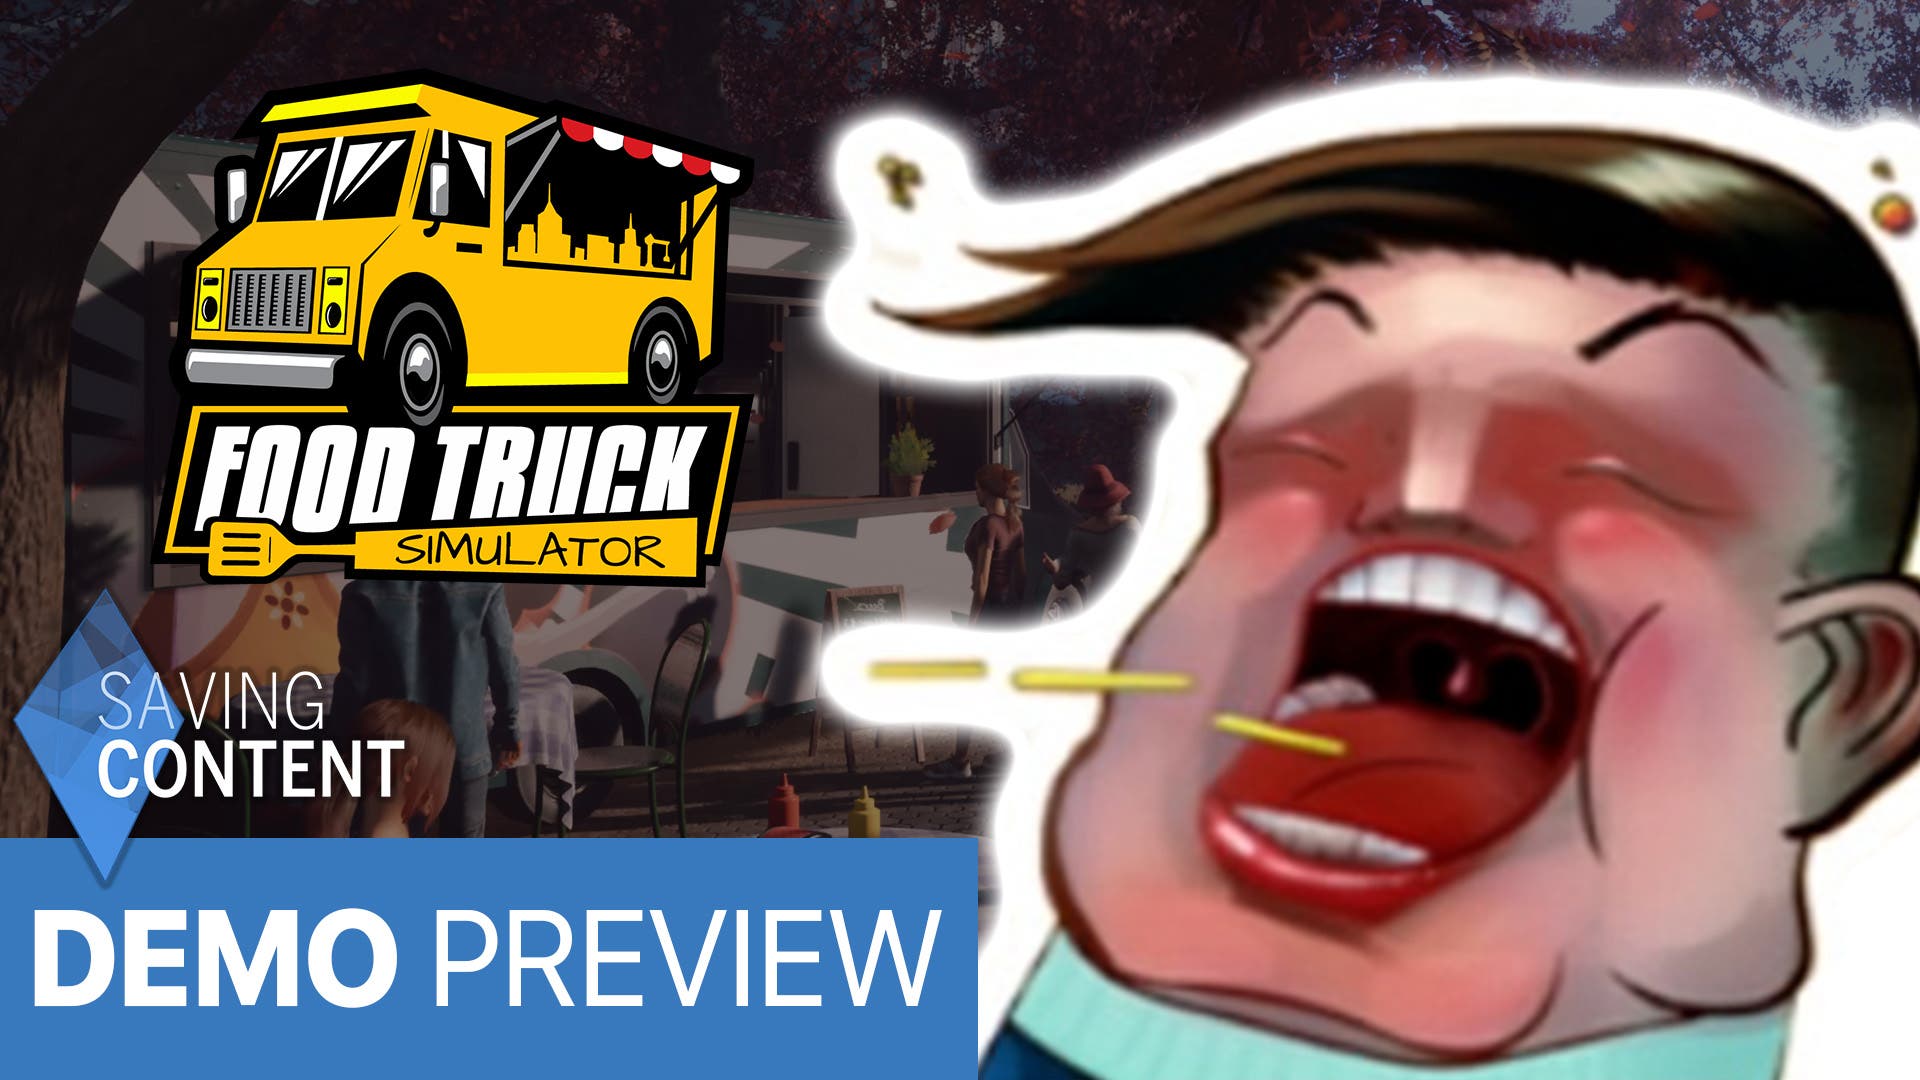 Food Truck Simulator thumb v2